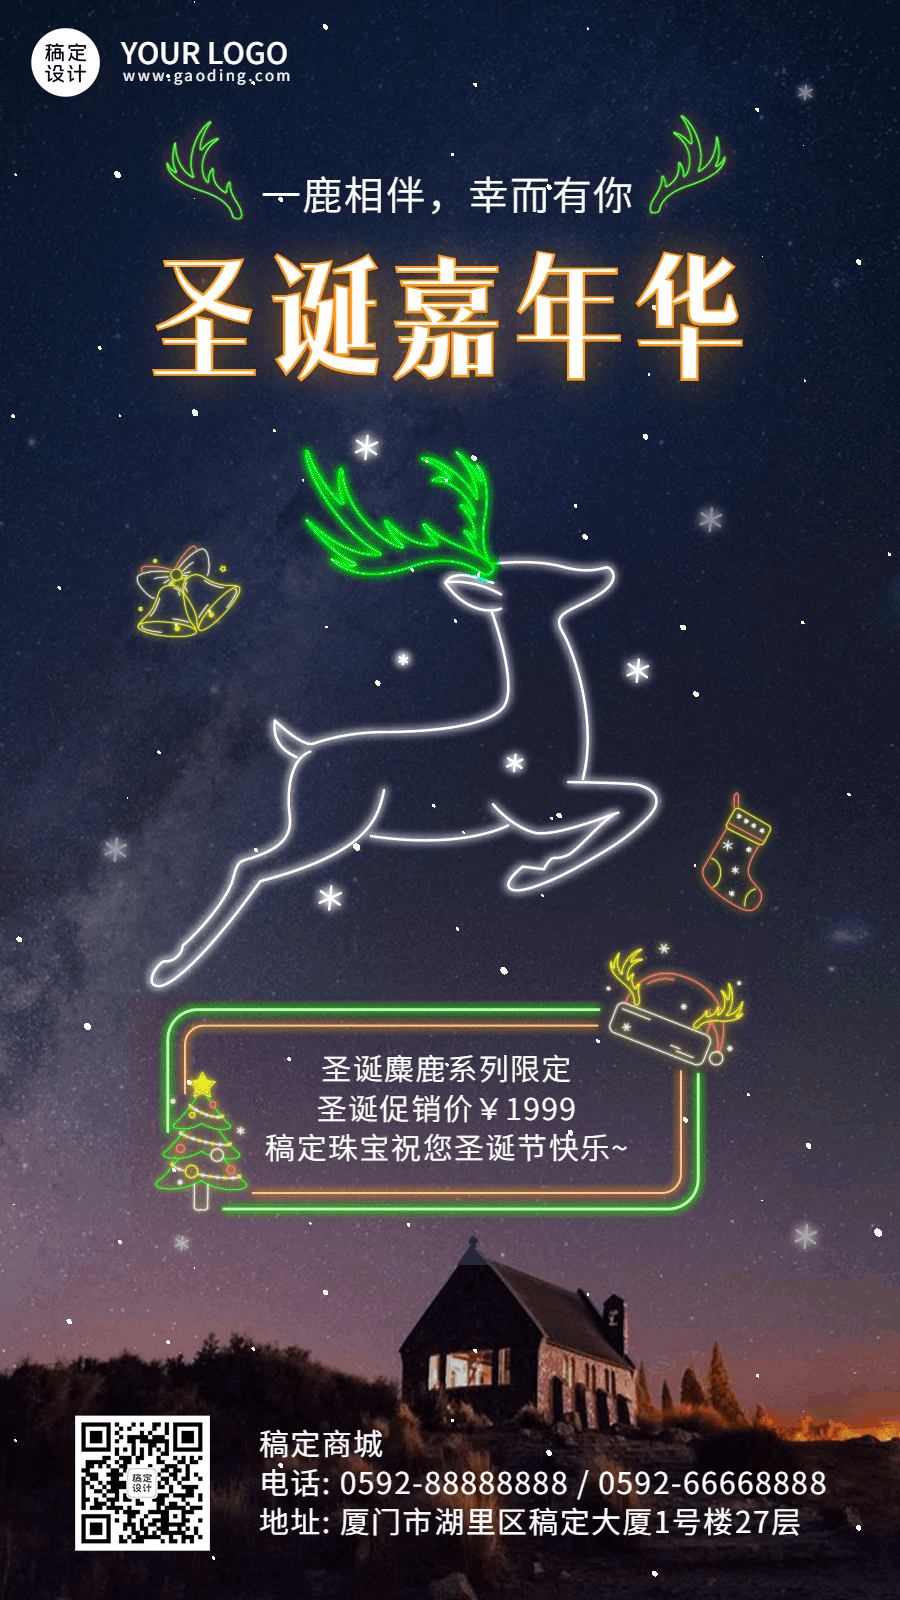 圣诞节嘉年华营销麋鹿GIF动态海报